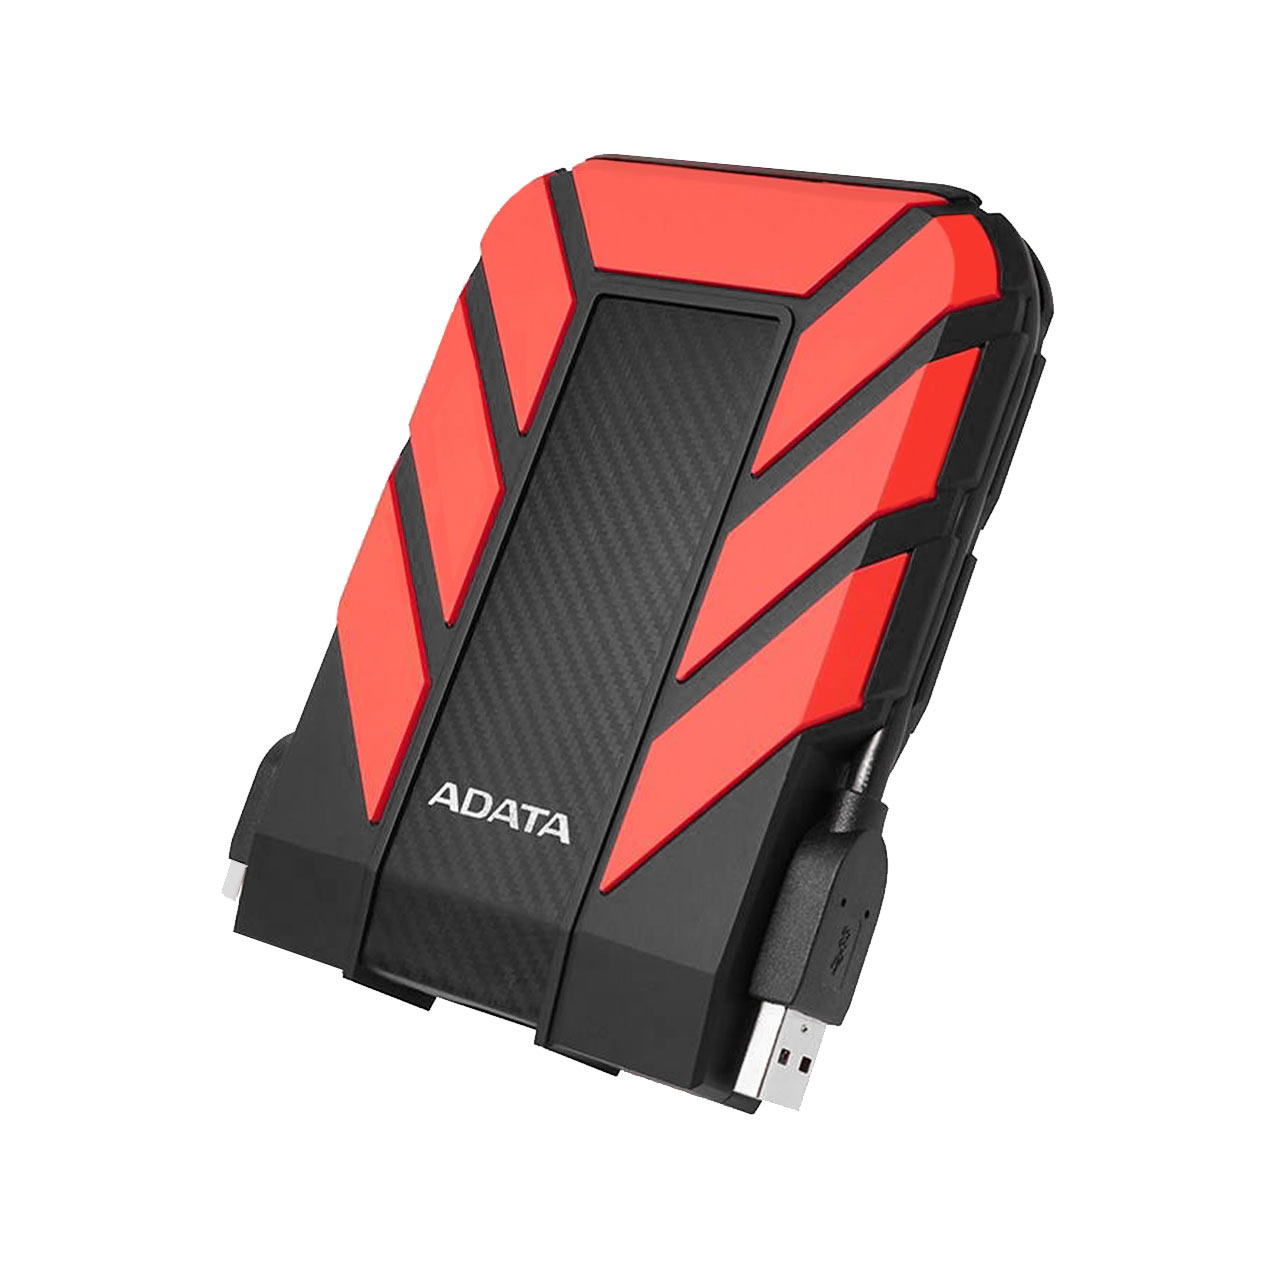 هارد اکسترنال ADATA مدل HD710 Pro ظرفیت 2TB - قرمز (گارانتی شرکت آونگ)